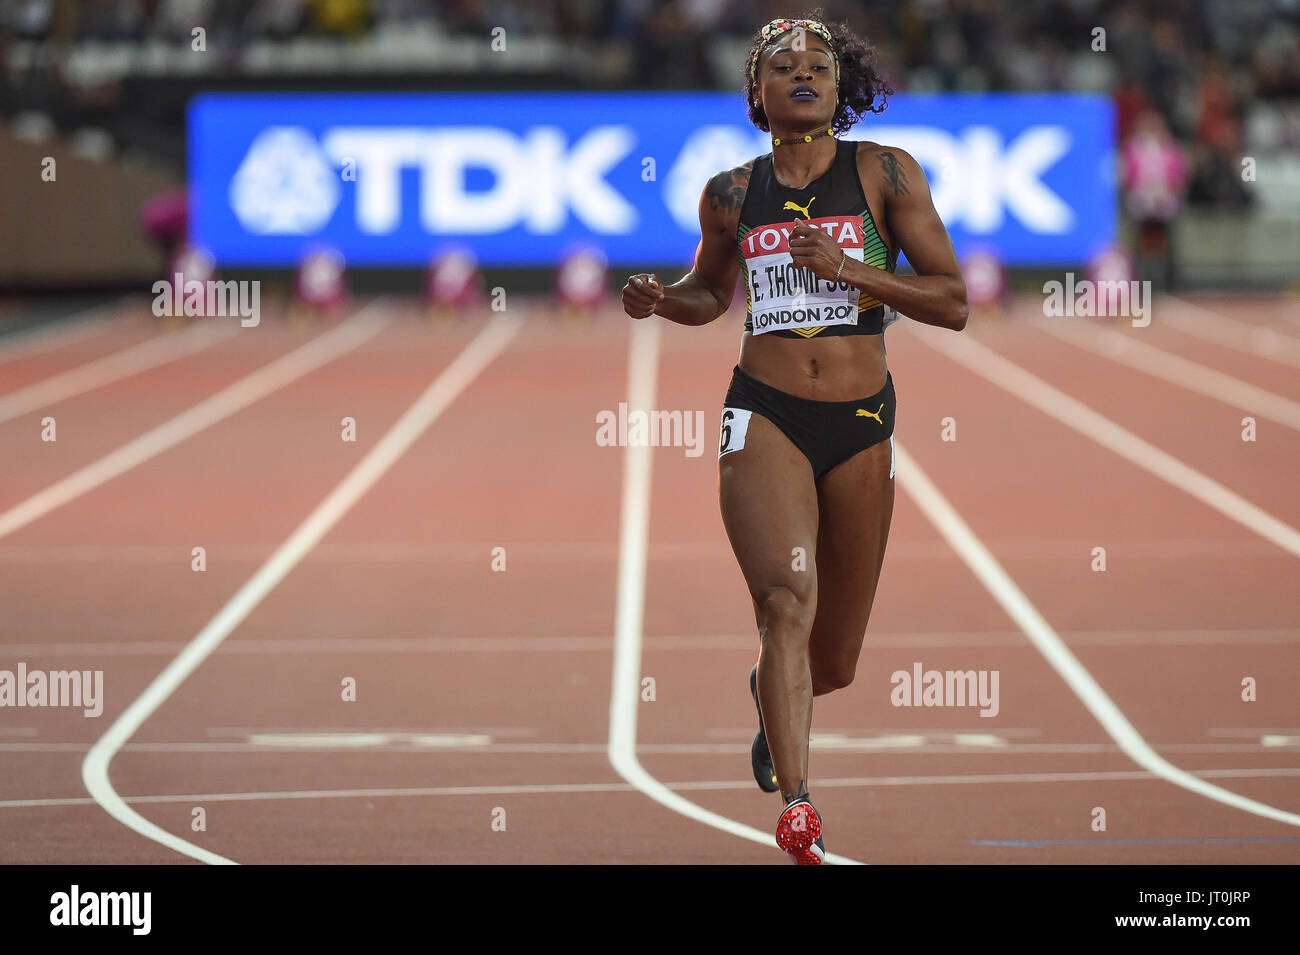 Londres, Royaume-Uni. 6e août, 2017. Elaine Thompson, Jamaïque, pendant 100 mètres finale à Londres le 6 août 2017 au 2017 es Championnats du monde d'athlétisme. Banque D'Images